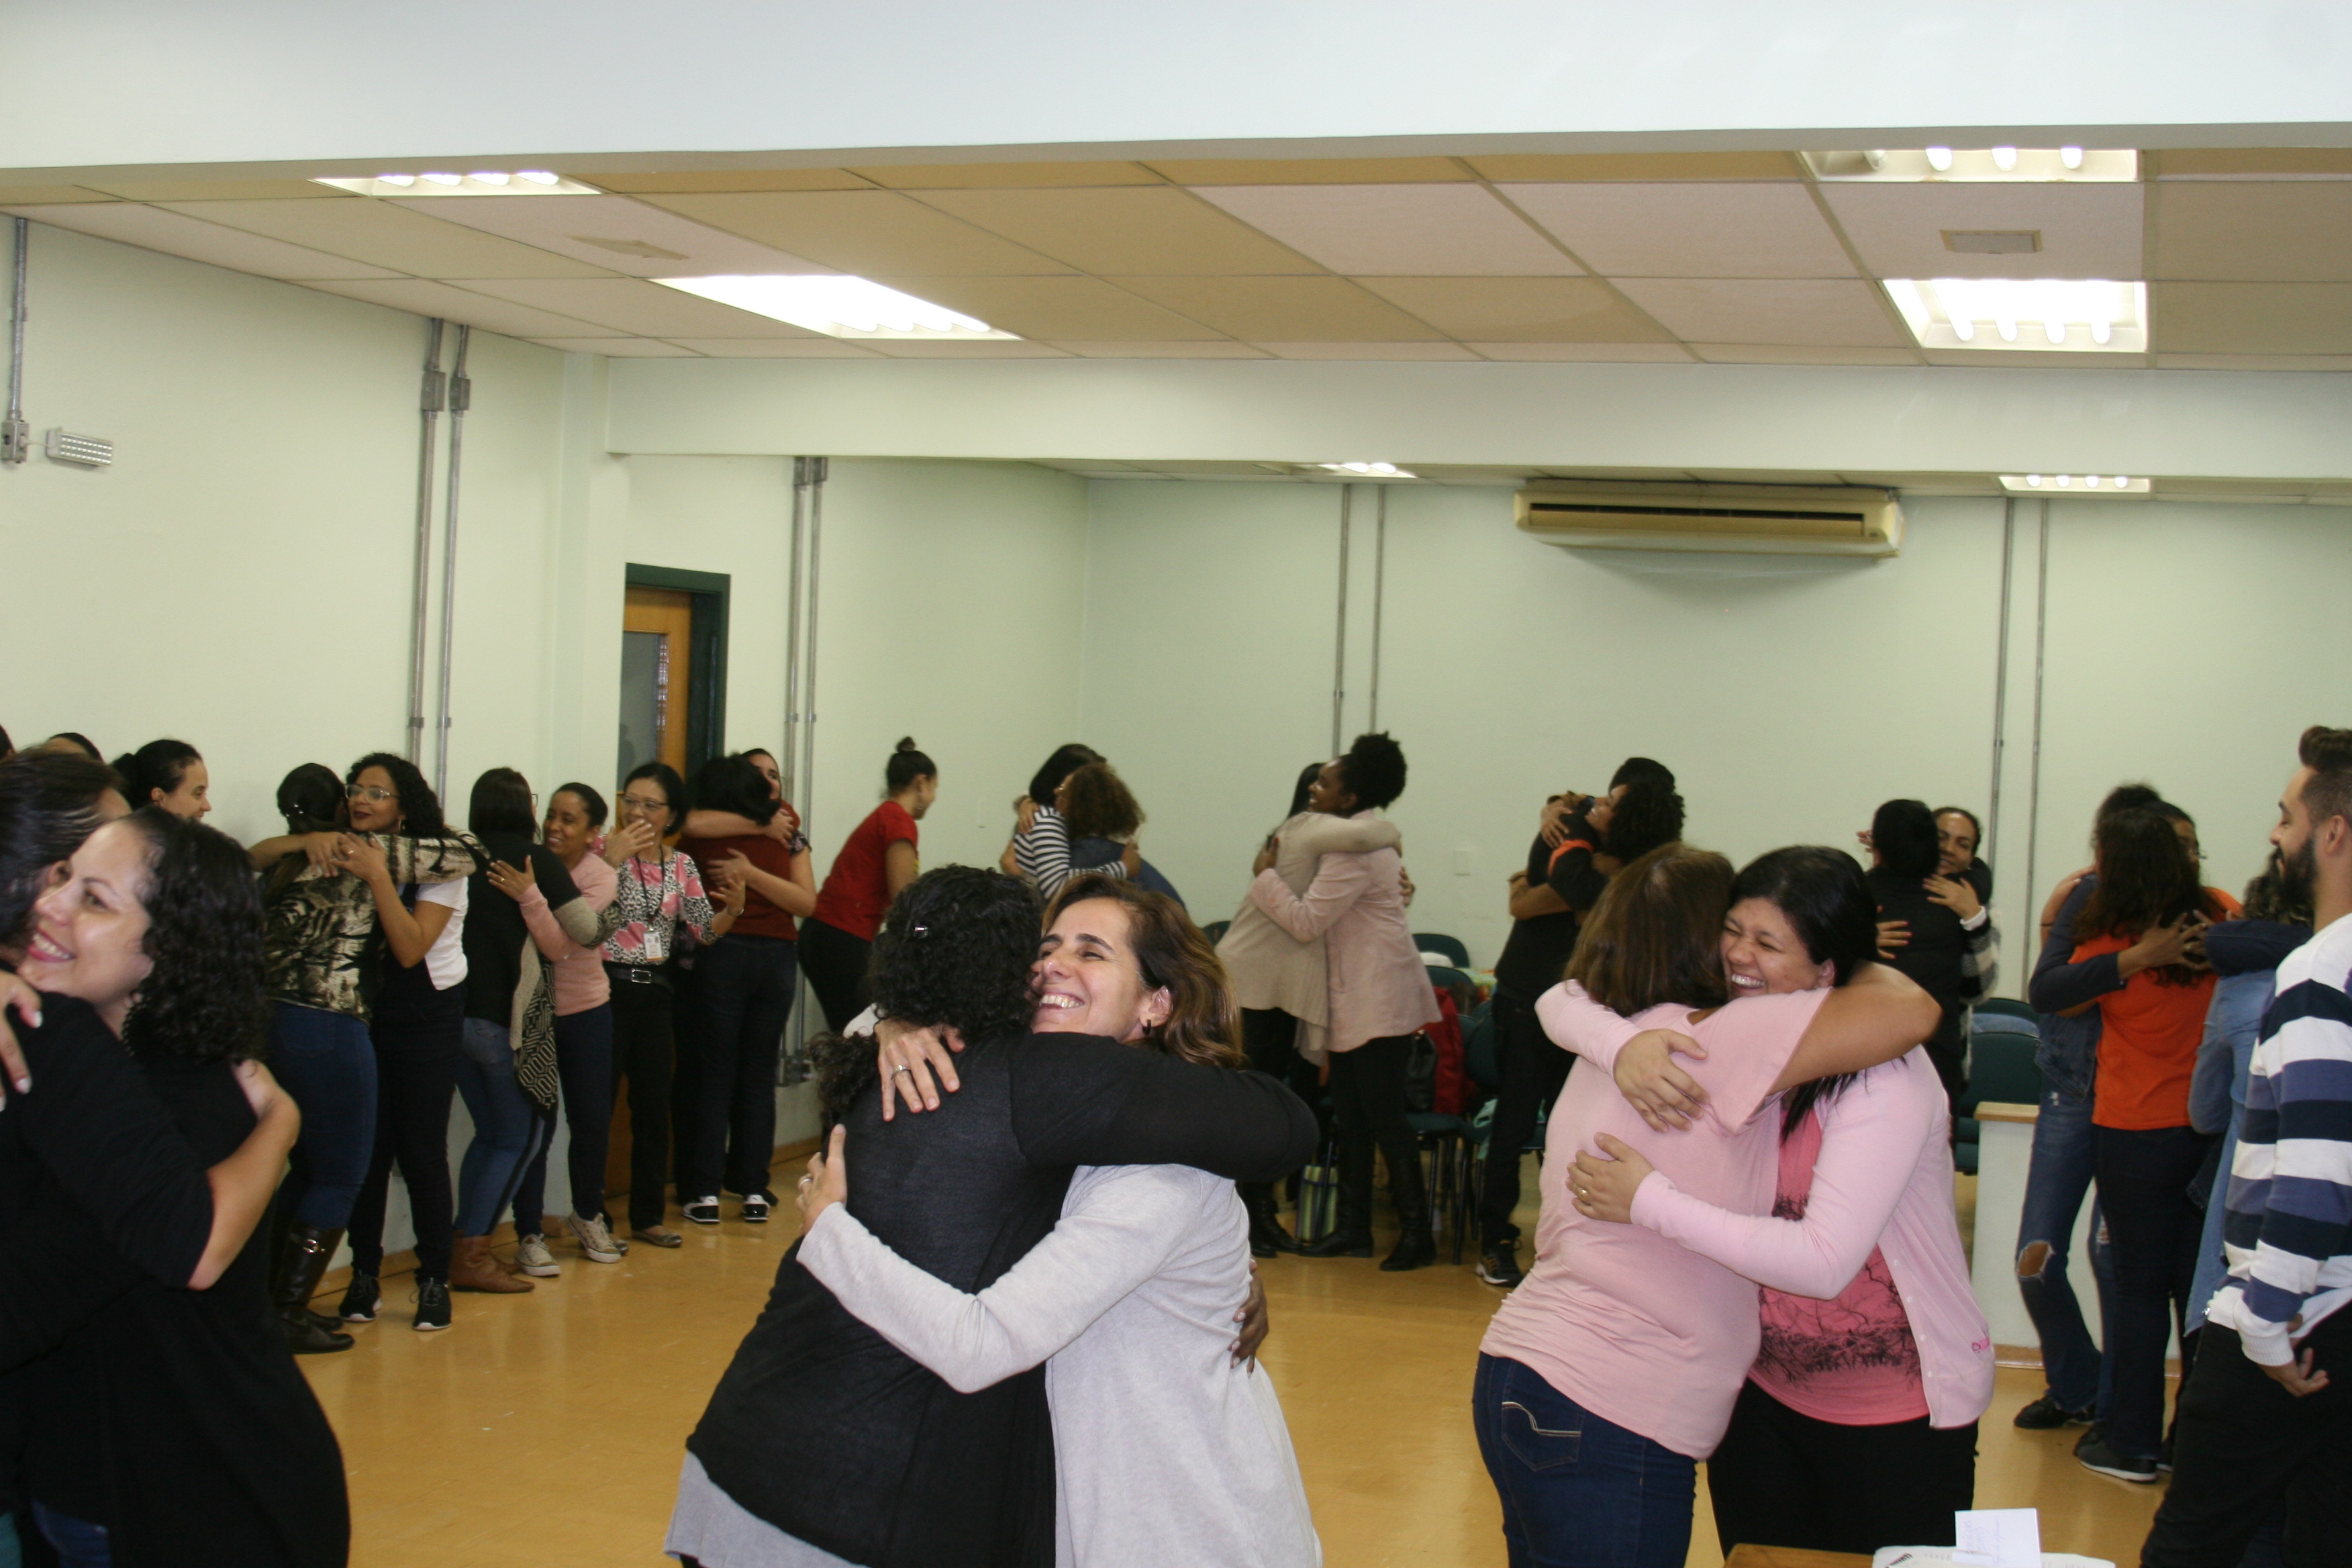 Assistentes sociais realizam dinâmica em grupo na qual se abraçam em pares formando roda enquanto sorriem